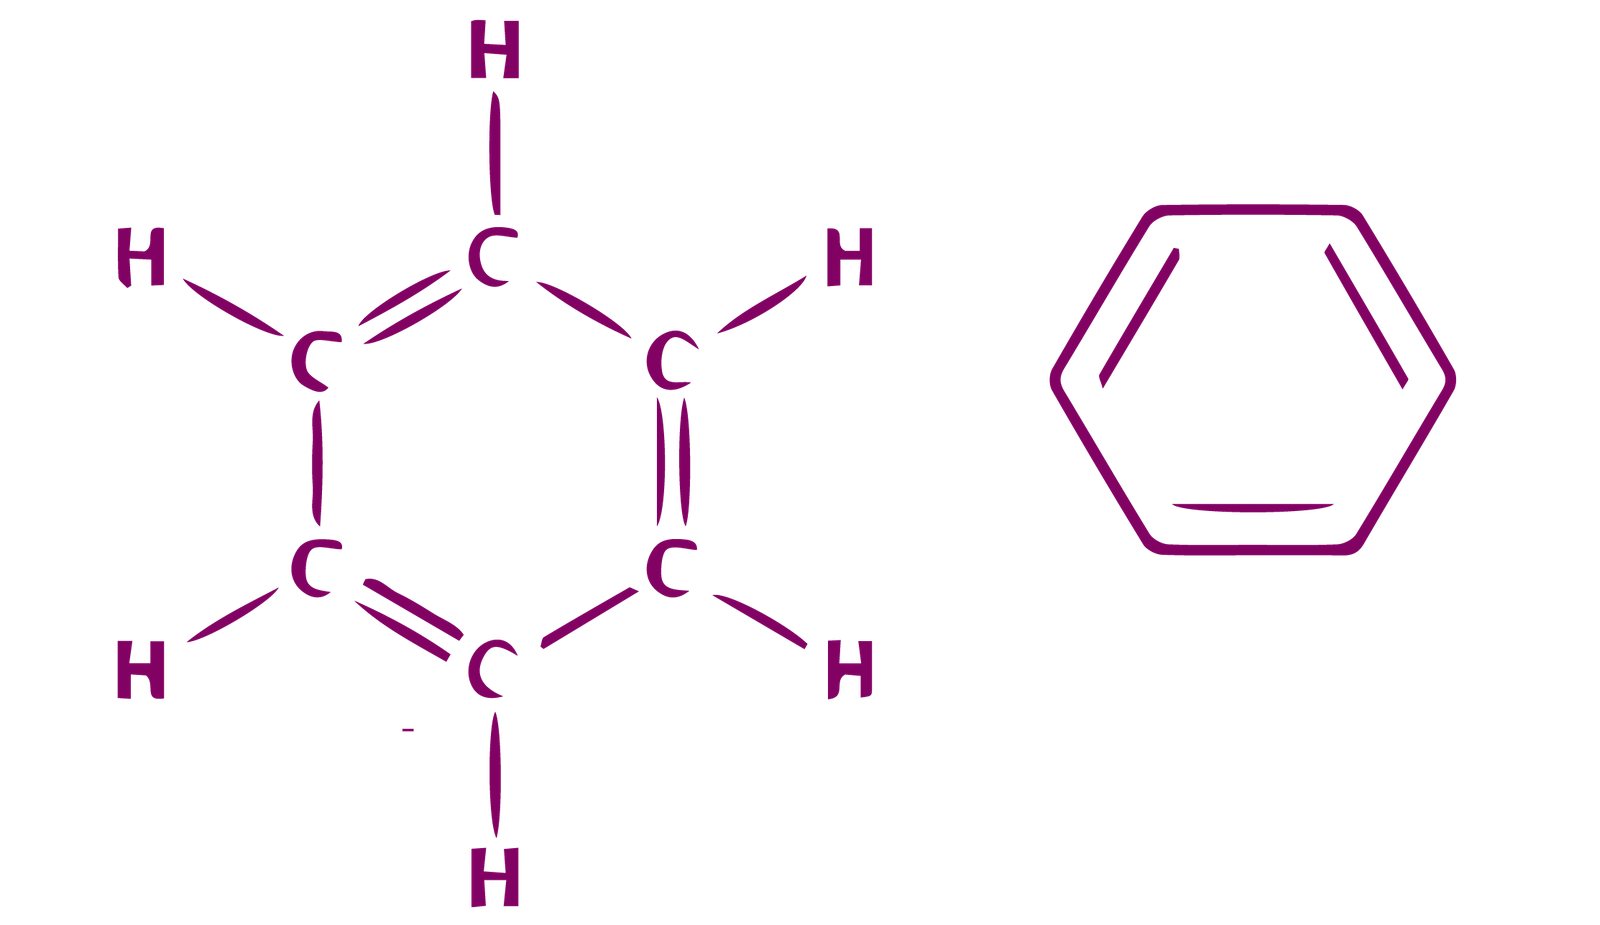 Deux croquis de la structure chimique d'un anneau de benzène. La structure de droite est une version abrégée qui ne montre pas l’emplacement des atomes de carbone et d'hydrogène.